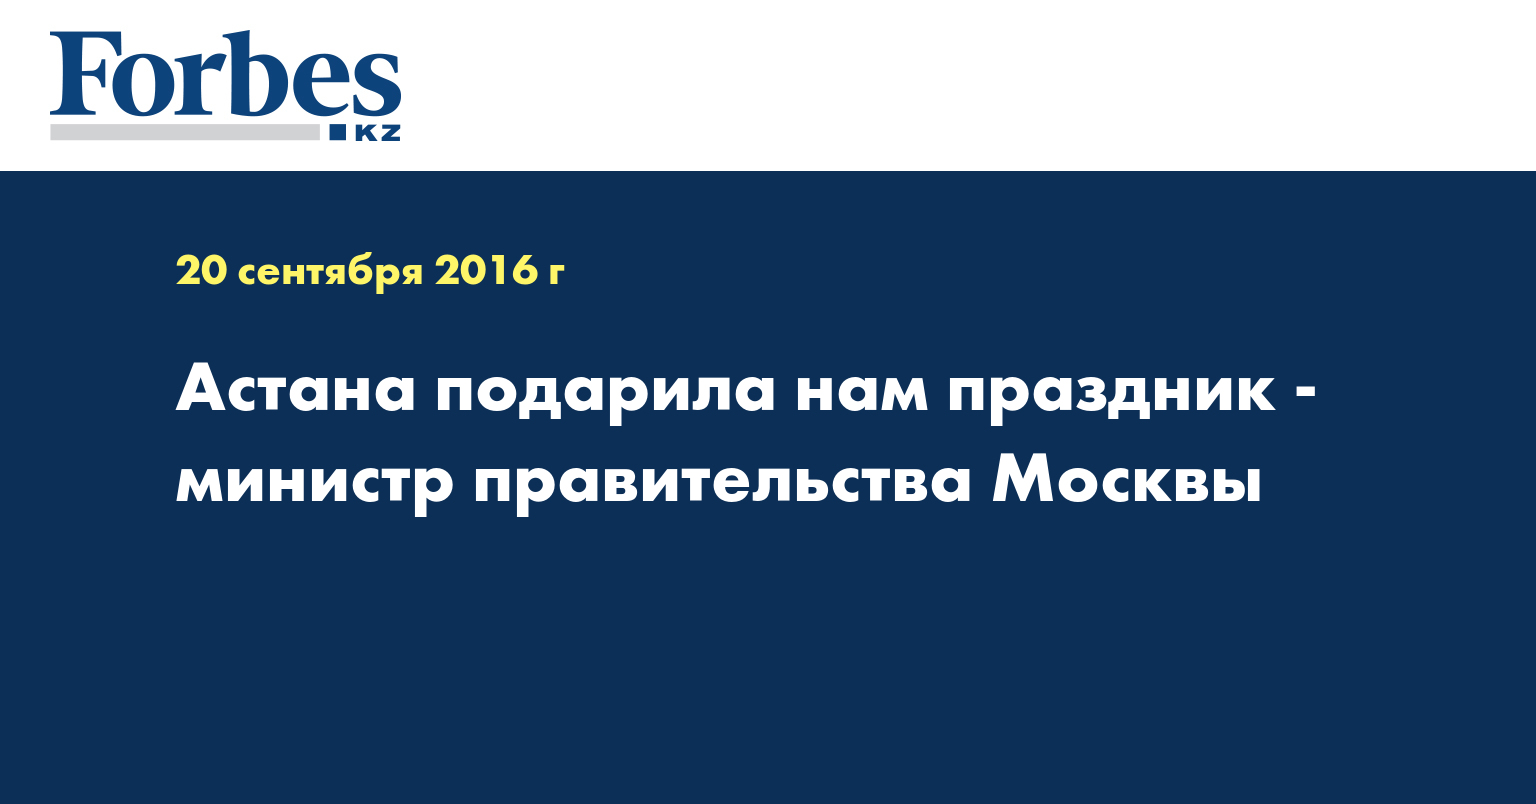 Астана подарила нам праздник - министр правительства Москвы